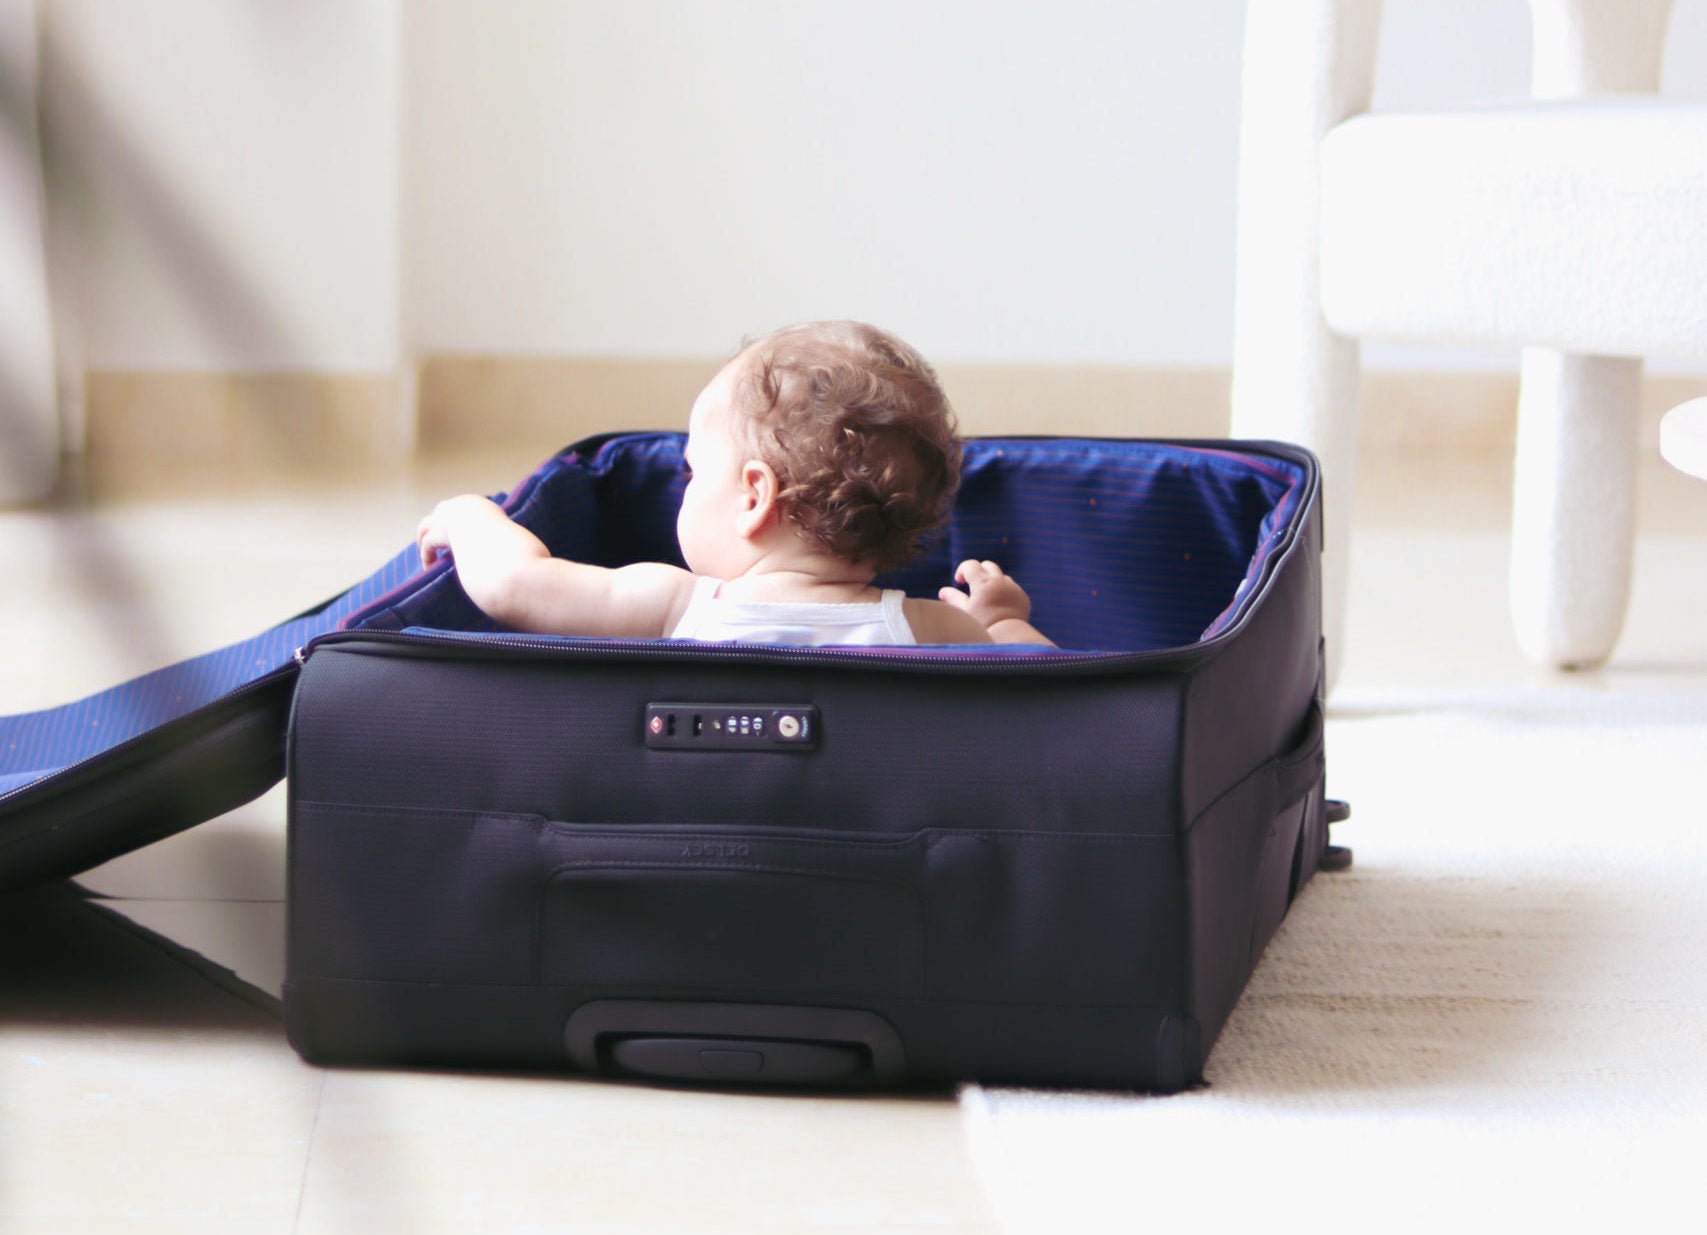 Ma valise de maternité – Nova's With Love